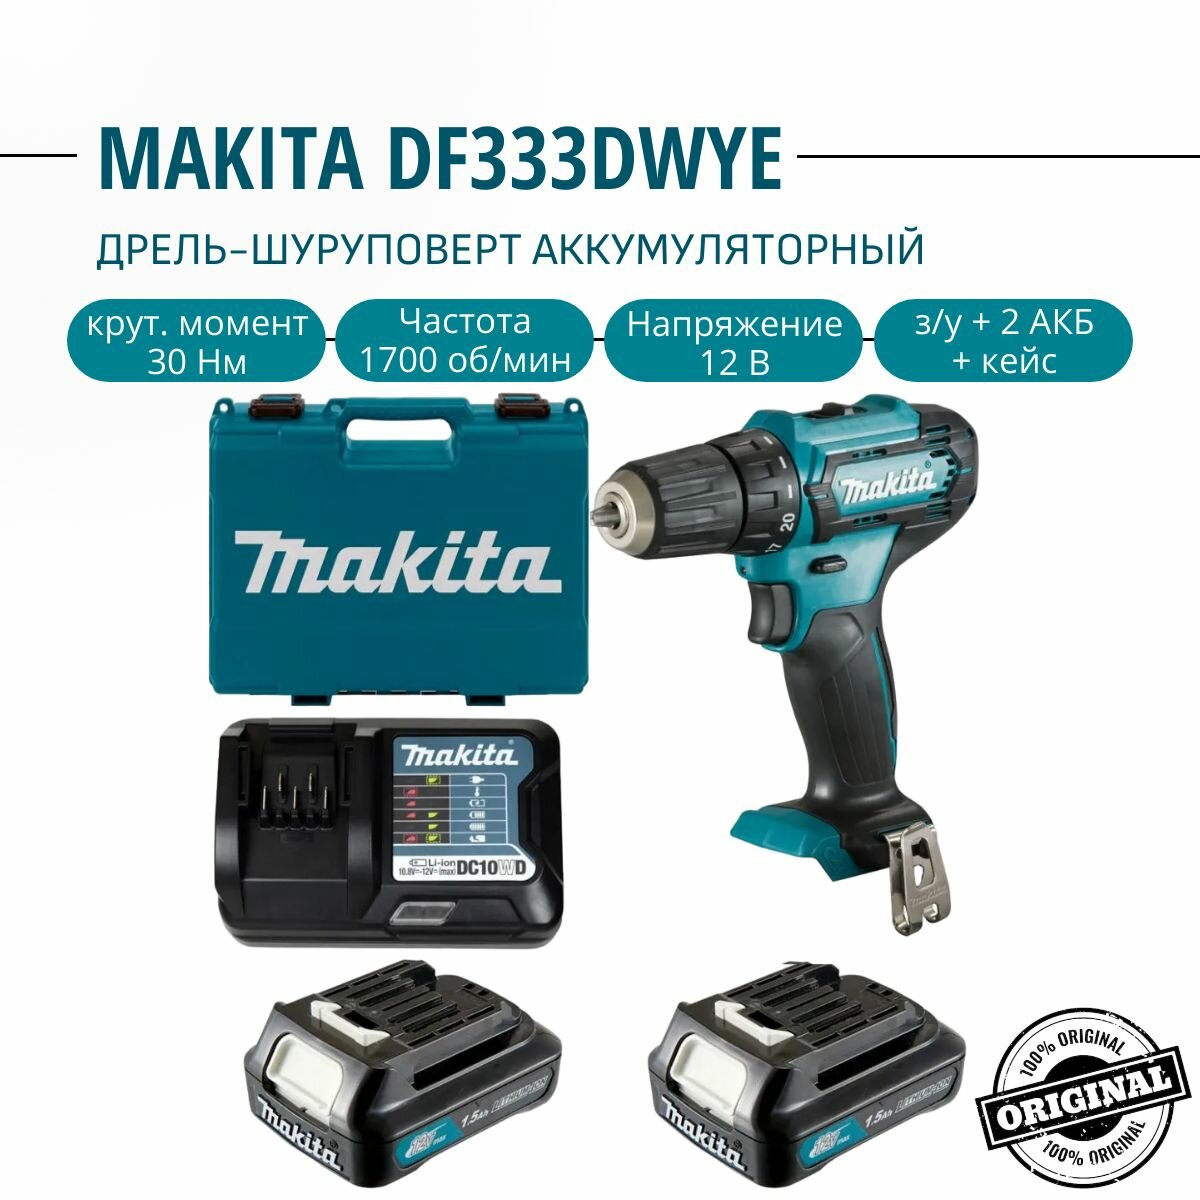 Дрель-шуруповерт аккумуляторный Makita DF333DWYE, 30 Нм, 12В, акк 2х1,5Ач, з/у